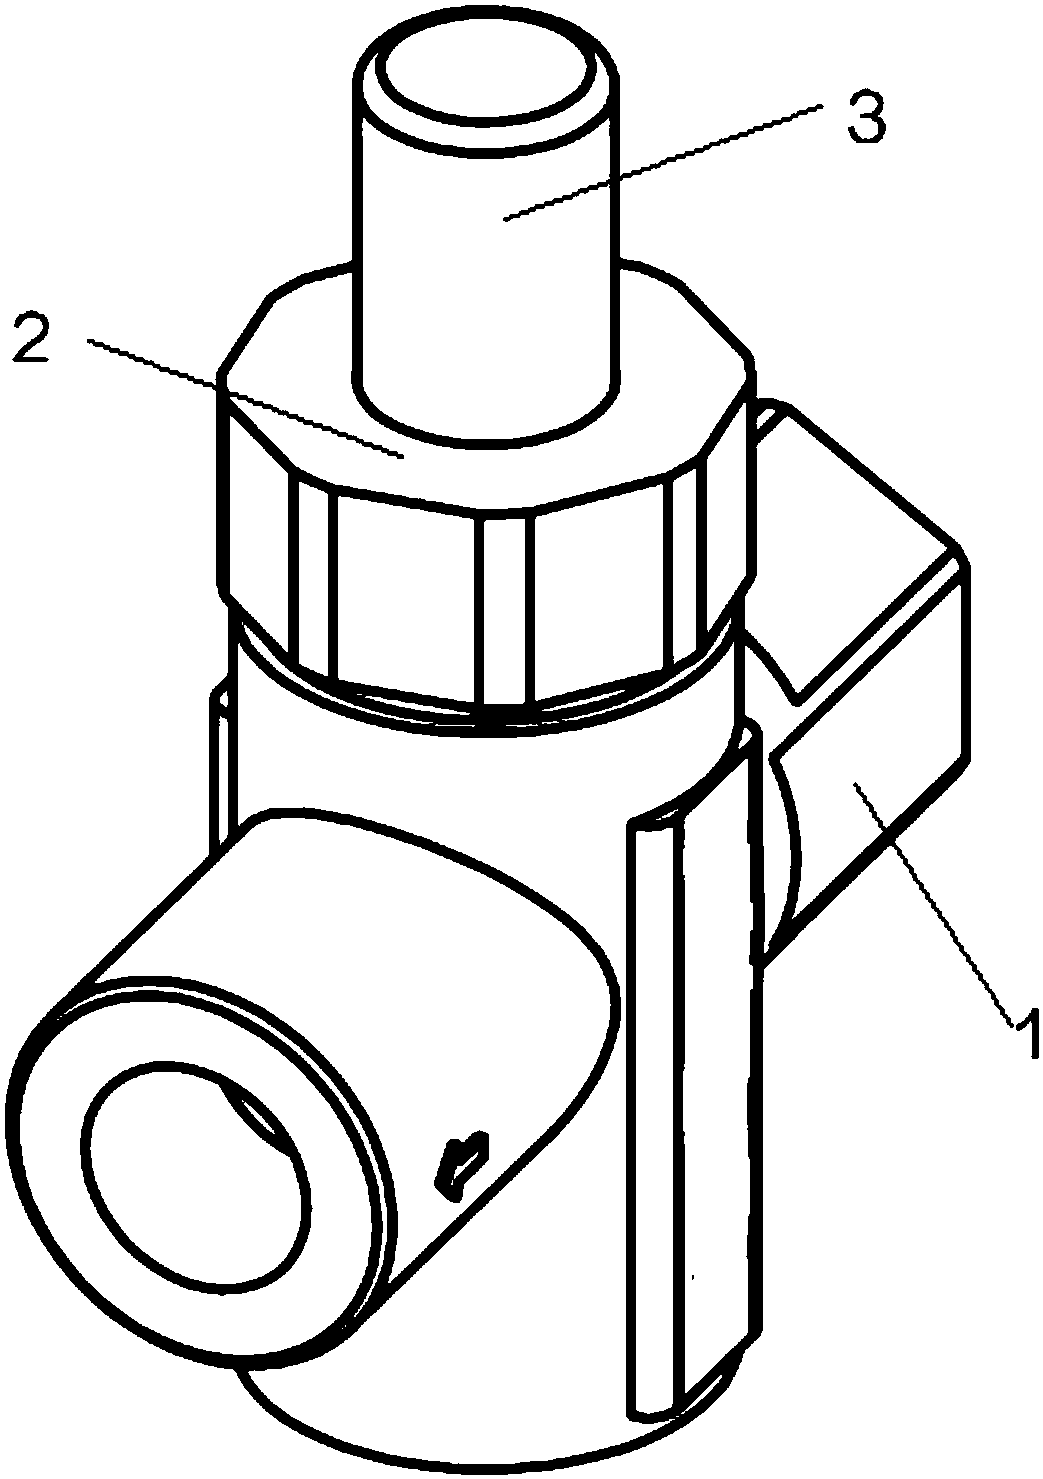 Novel low-flow-gas push button valve